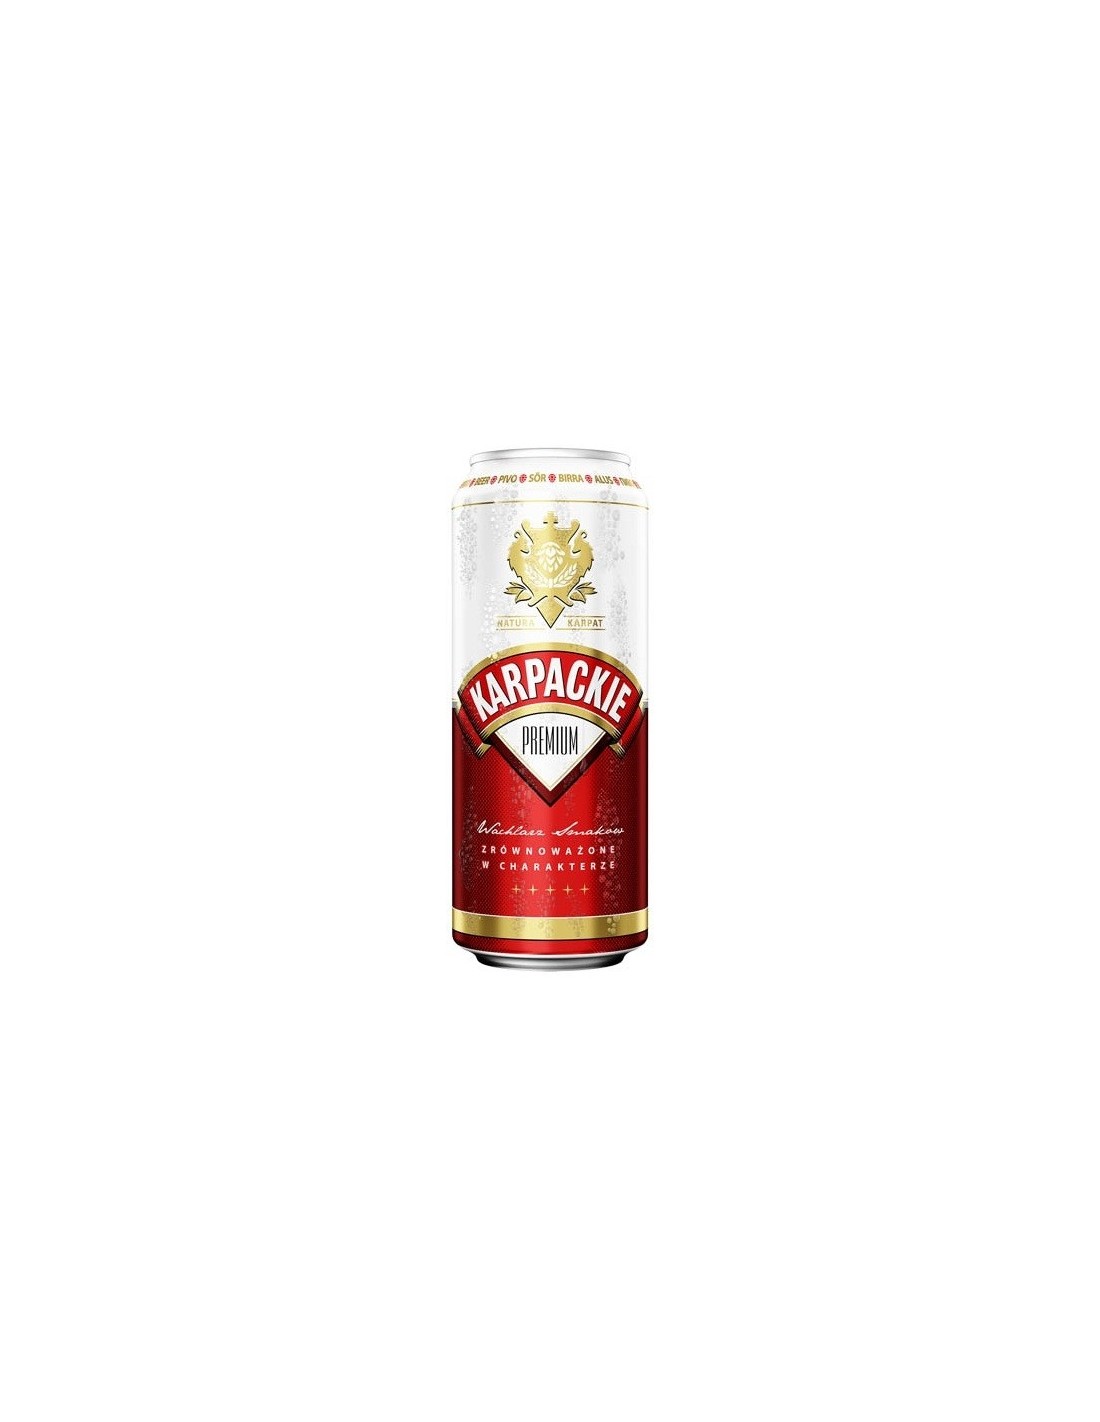 Bere blonda Karpackie Premium, 5% alc., 0.5L, Germania alcooldiscount.ro